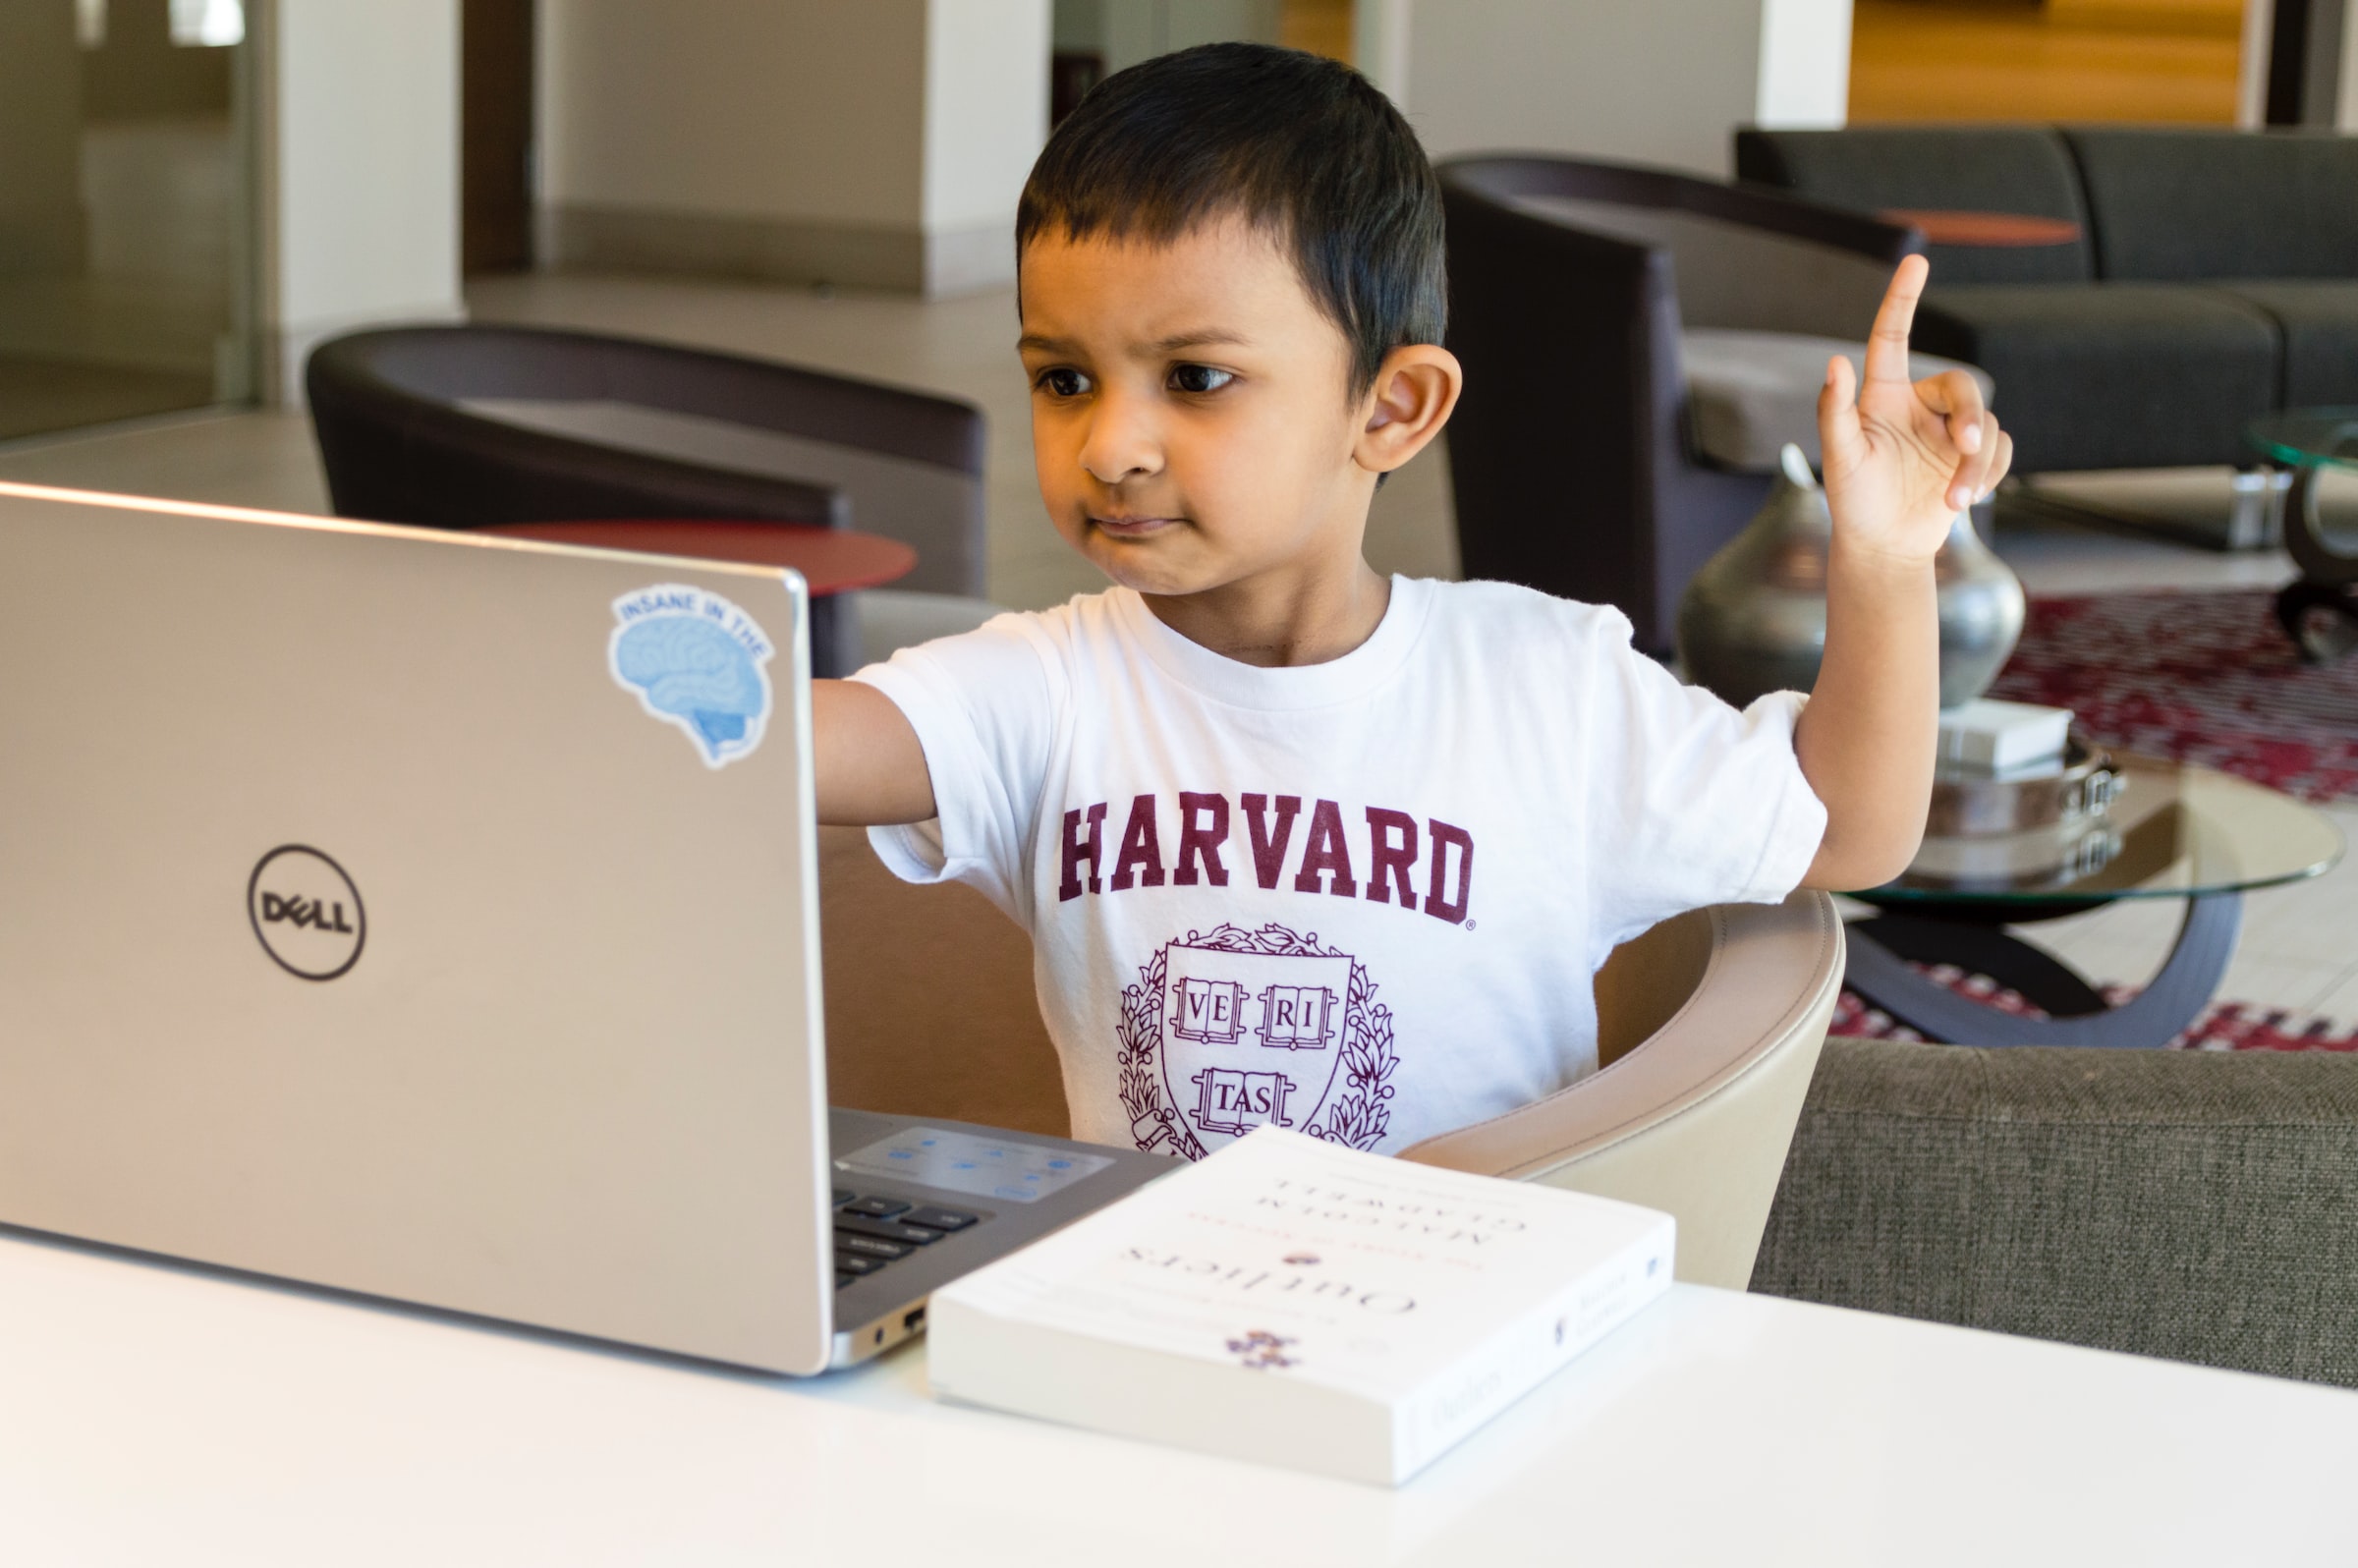 Ребенок одет в белую футболку, смотрит что-то в сером ноутбуке Dell, он также поднимает левую руку.